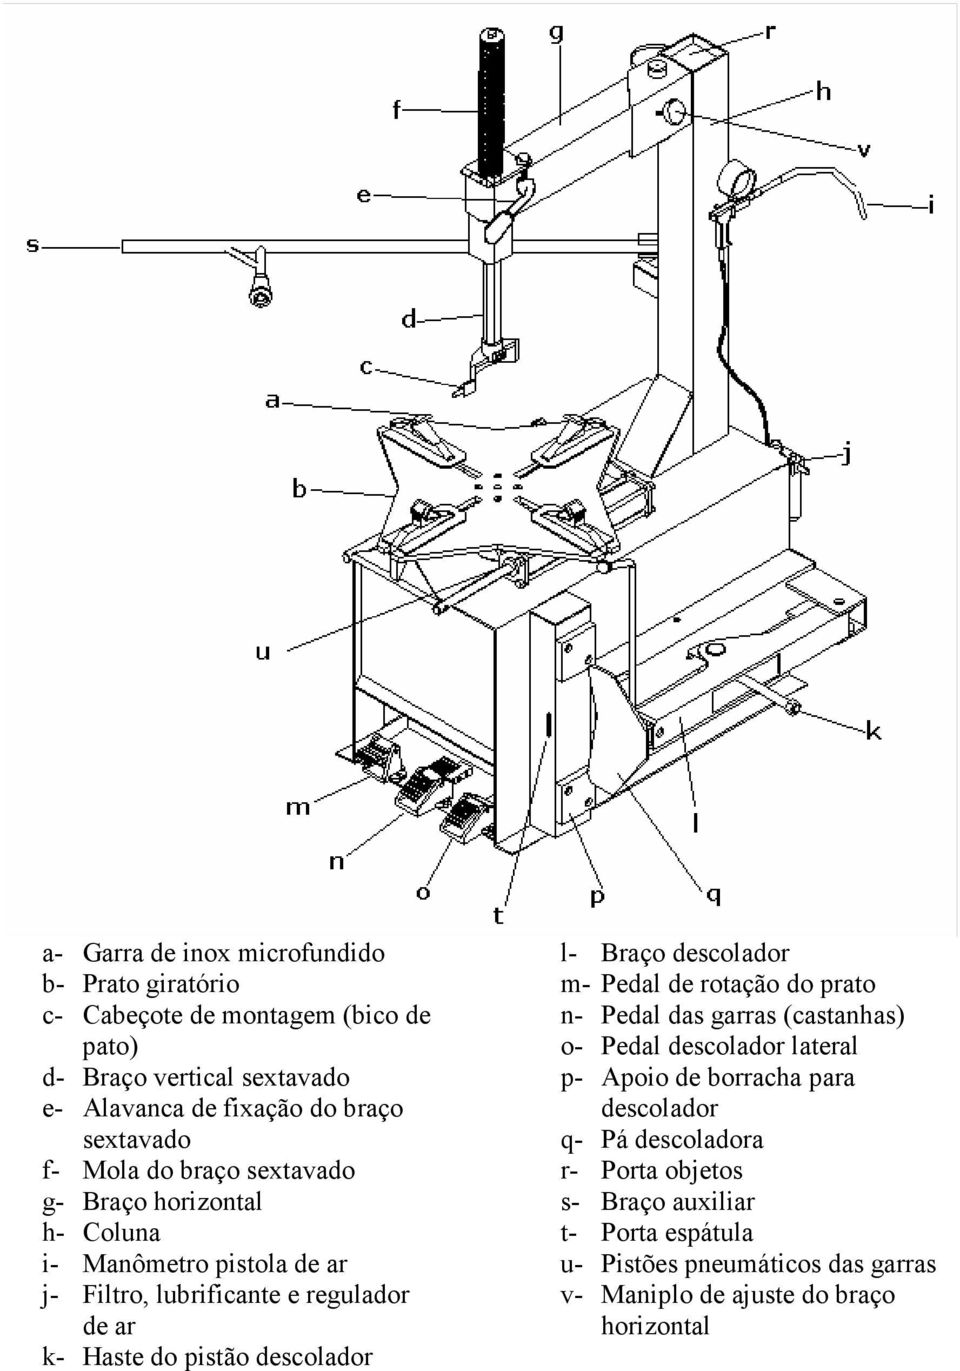 pistão descolador l- Braço descolador m- Pedal de rotação do prato n- Pedal das garras (castanhas) o- Pedal descolador lateral p- Apoio de borracha